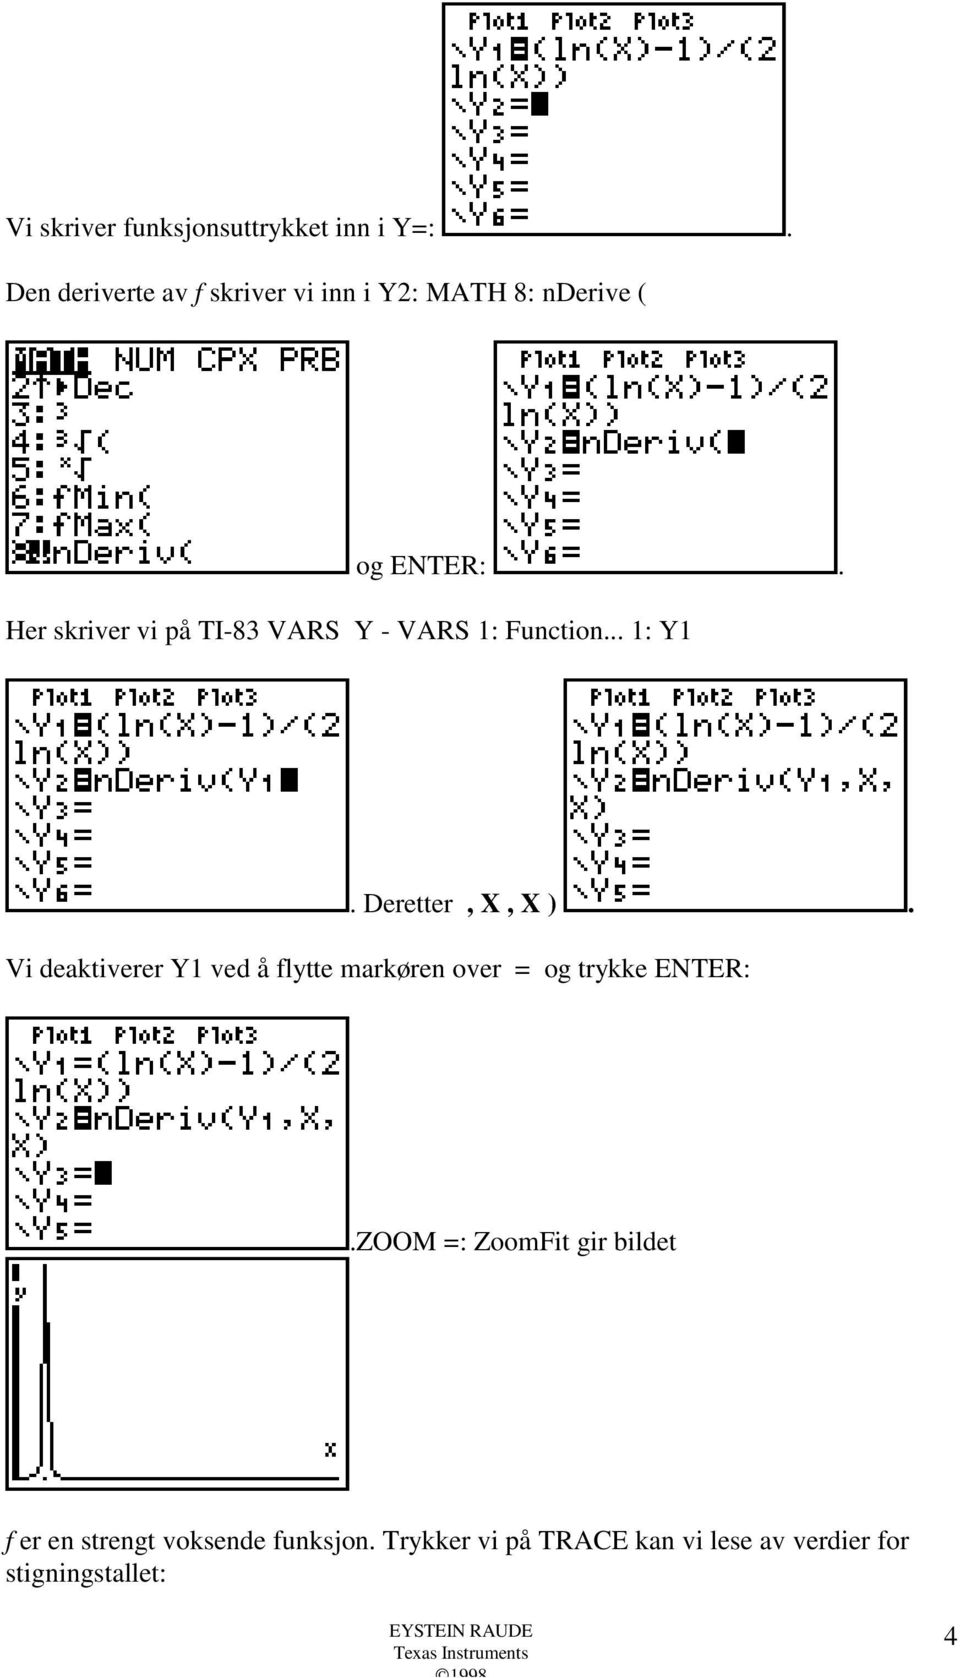 Her skriver vi på TI-83 VARS Y - VARS 1: Function... 1: Y1. Deretter, X, X ).